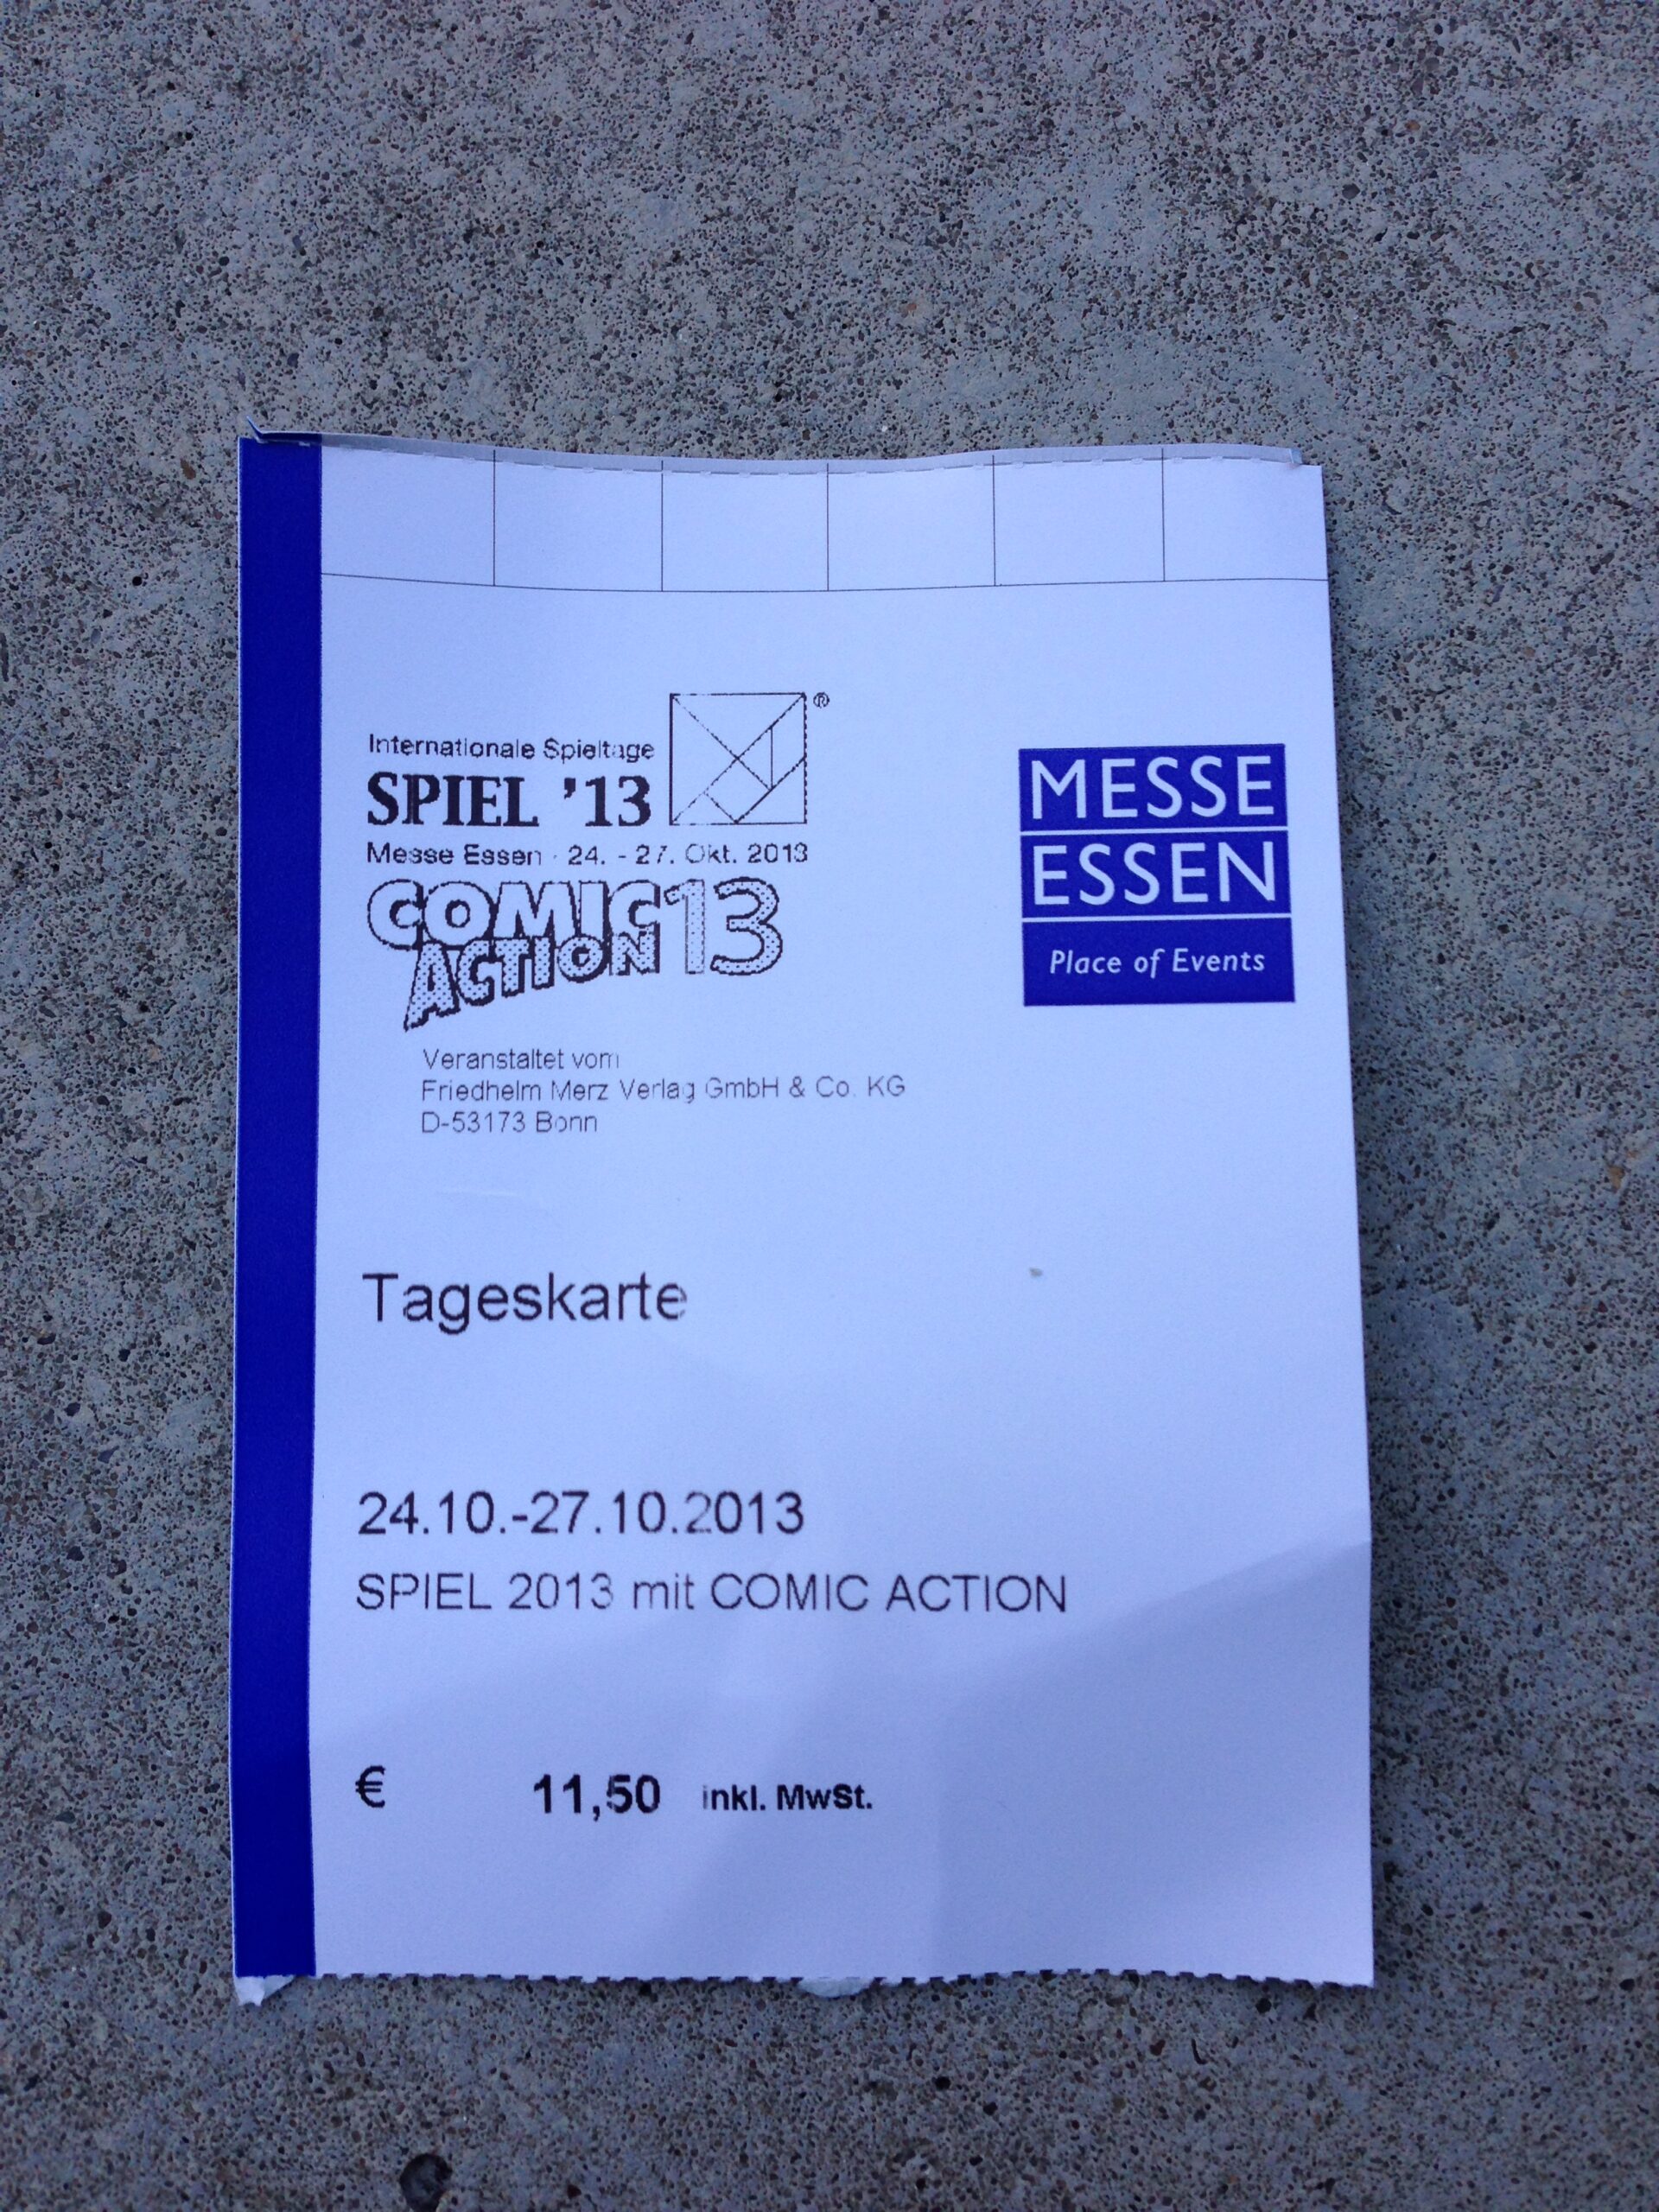 Weiß-blaue Eintrittskarte für die Messe Spiel'13